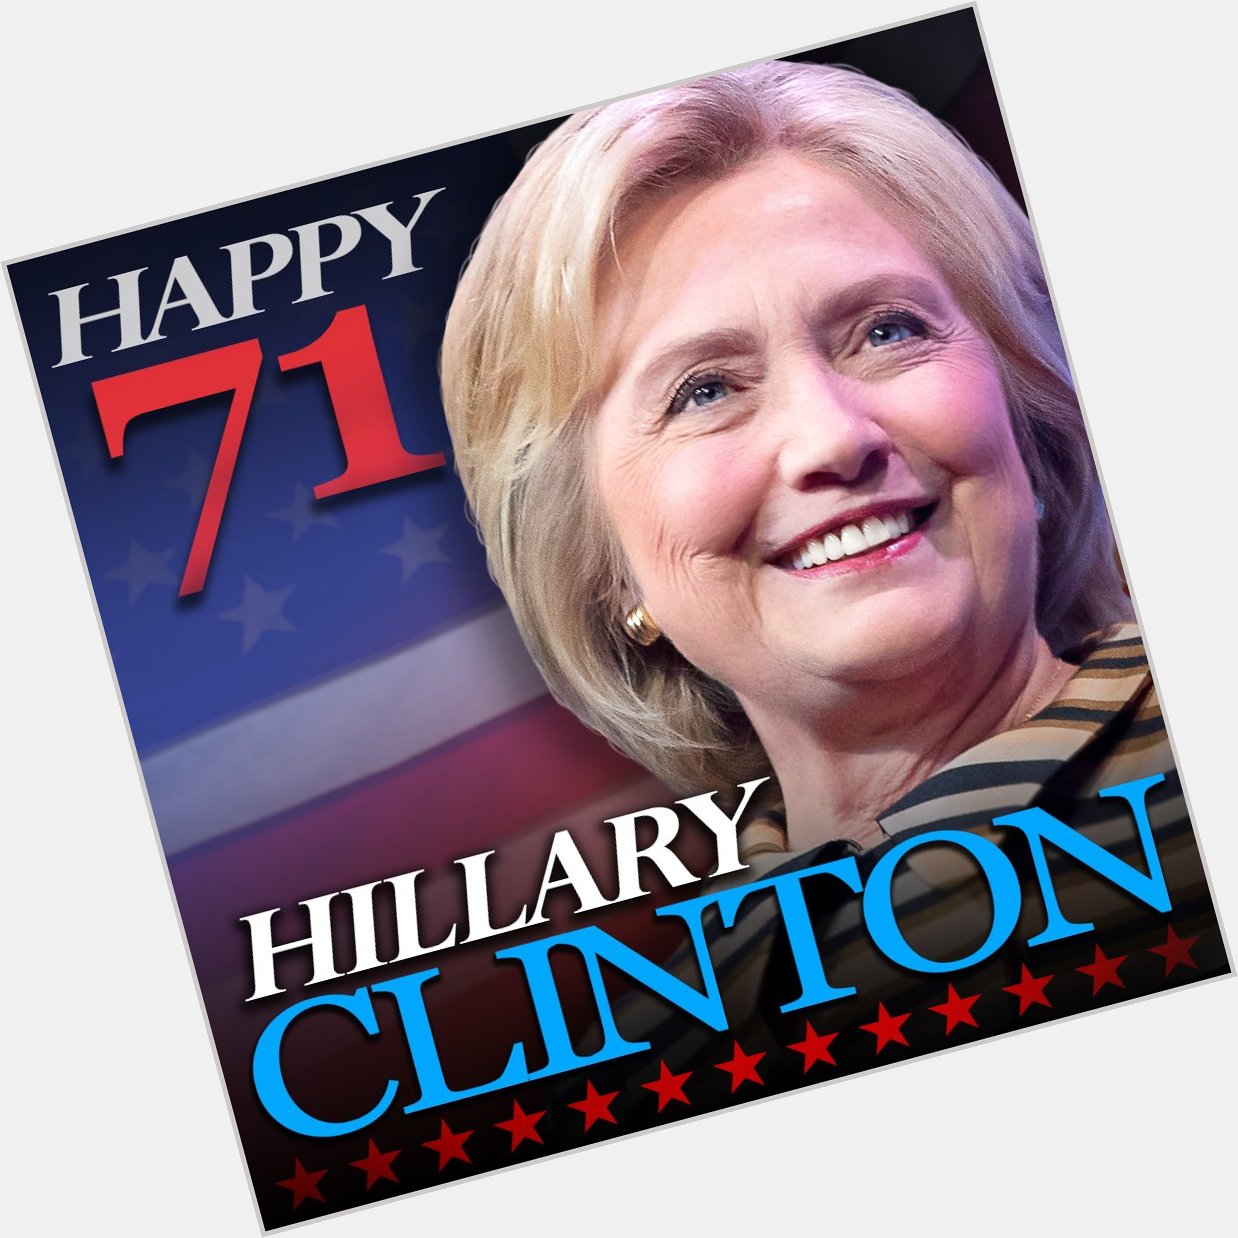 Happy 71st birthday to Hillary Clinton! 